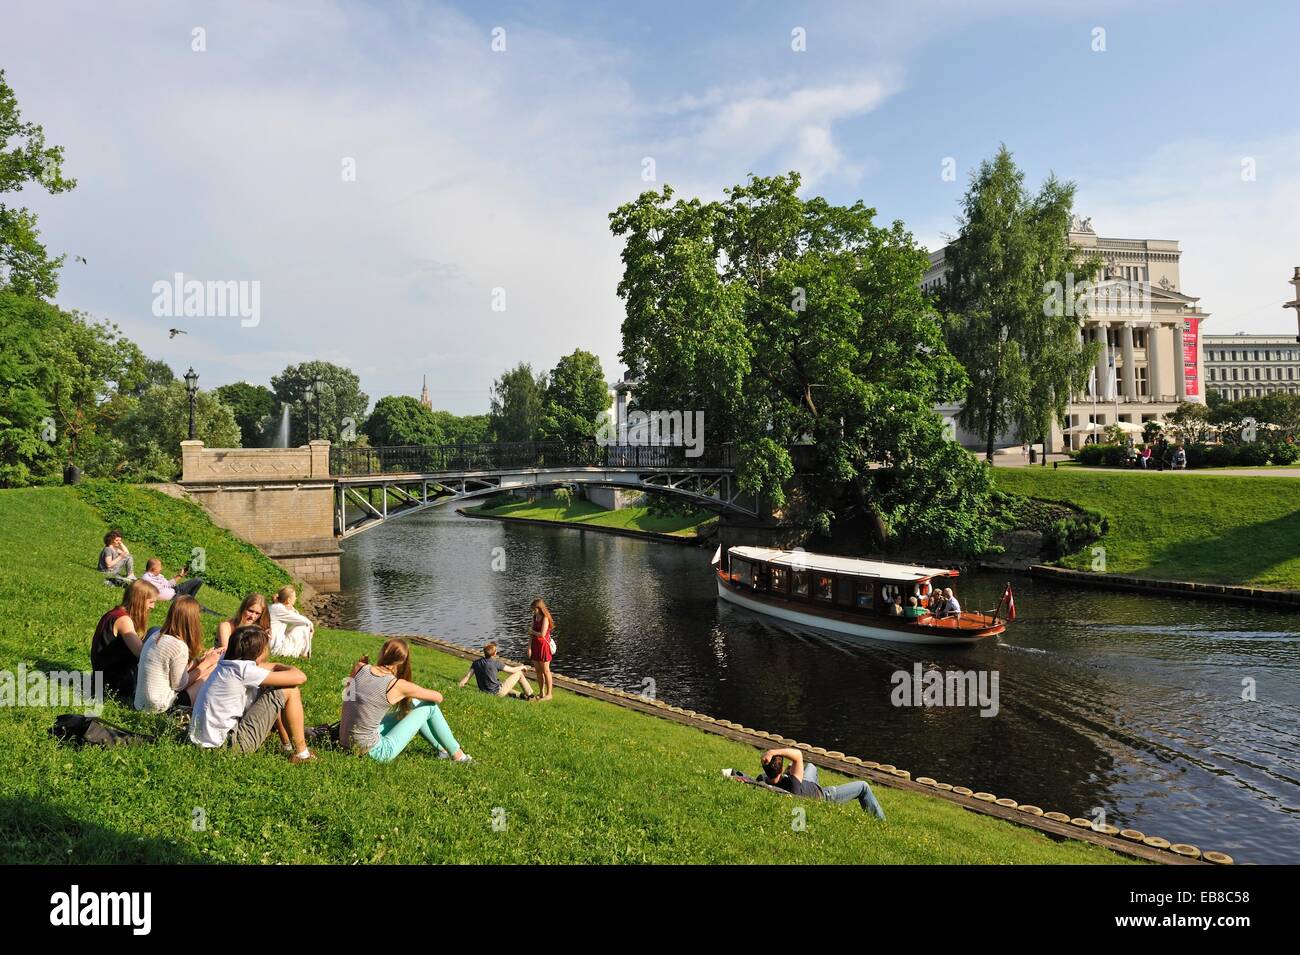 junge Menschen am Ufer des Kanals rund um die Altstadt von Riga vor der Nationaloper Haus Lettland Baltic Stockfoto